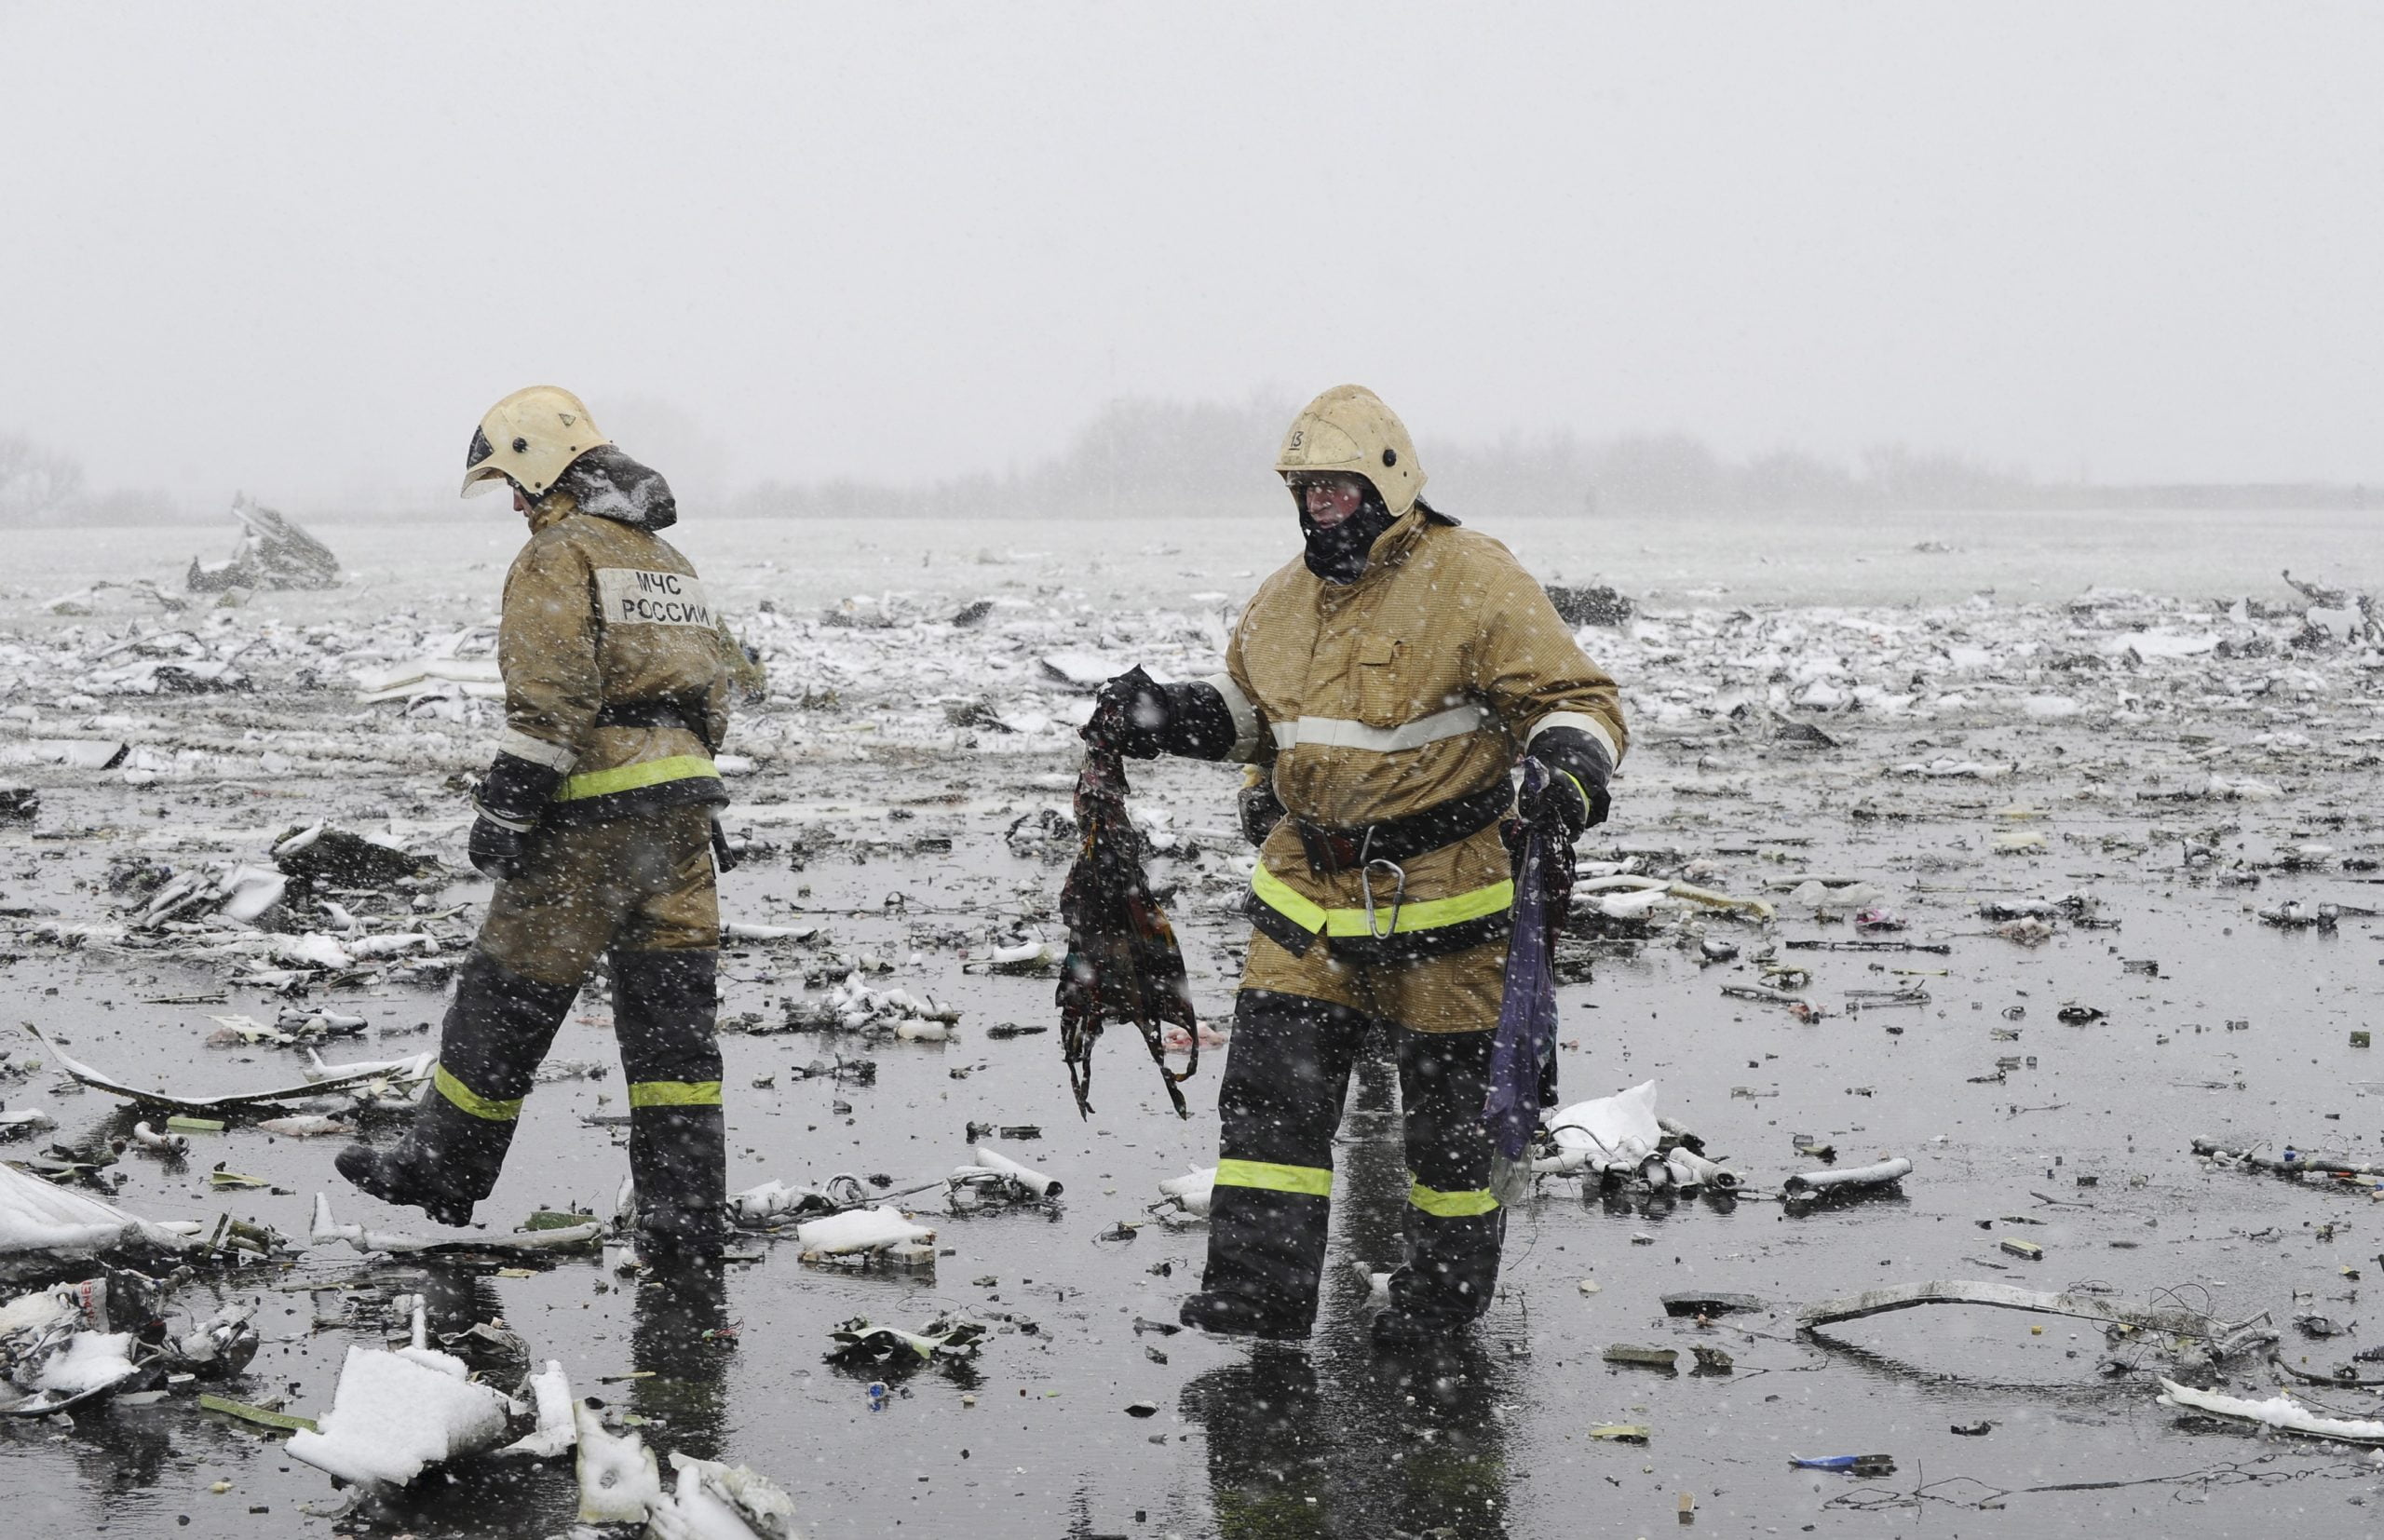 Statut - Un avion de ligne s'est écrasé lors de son atterrissage en Russie - 3